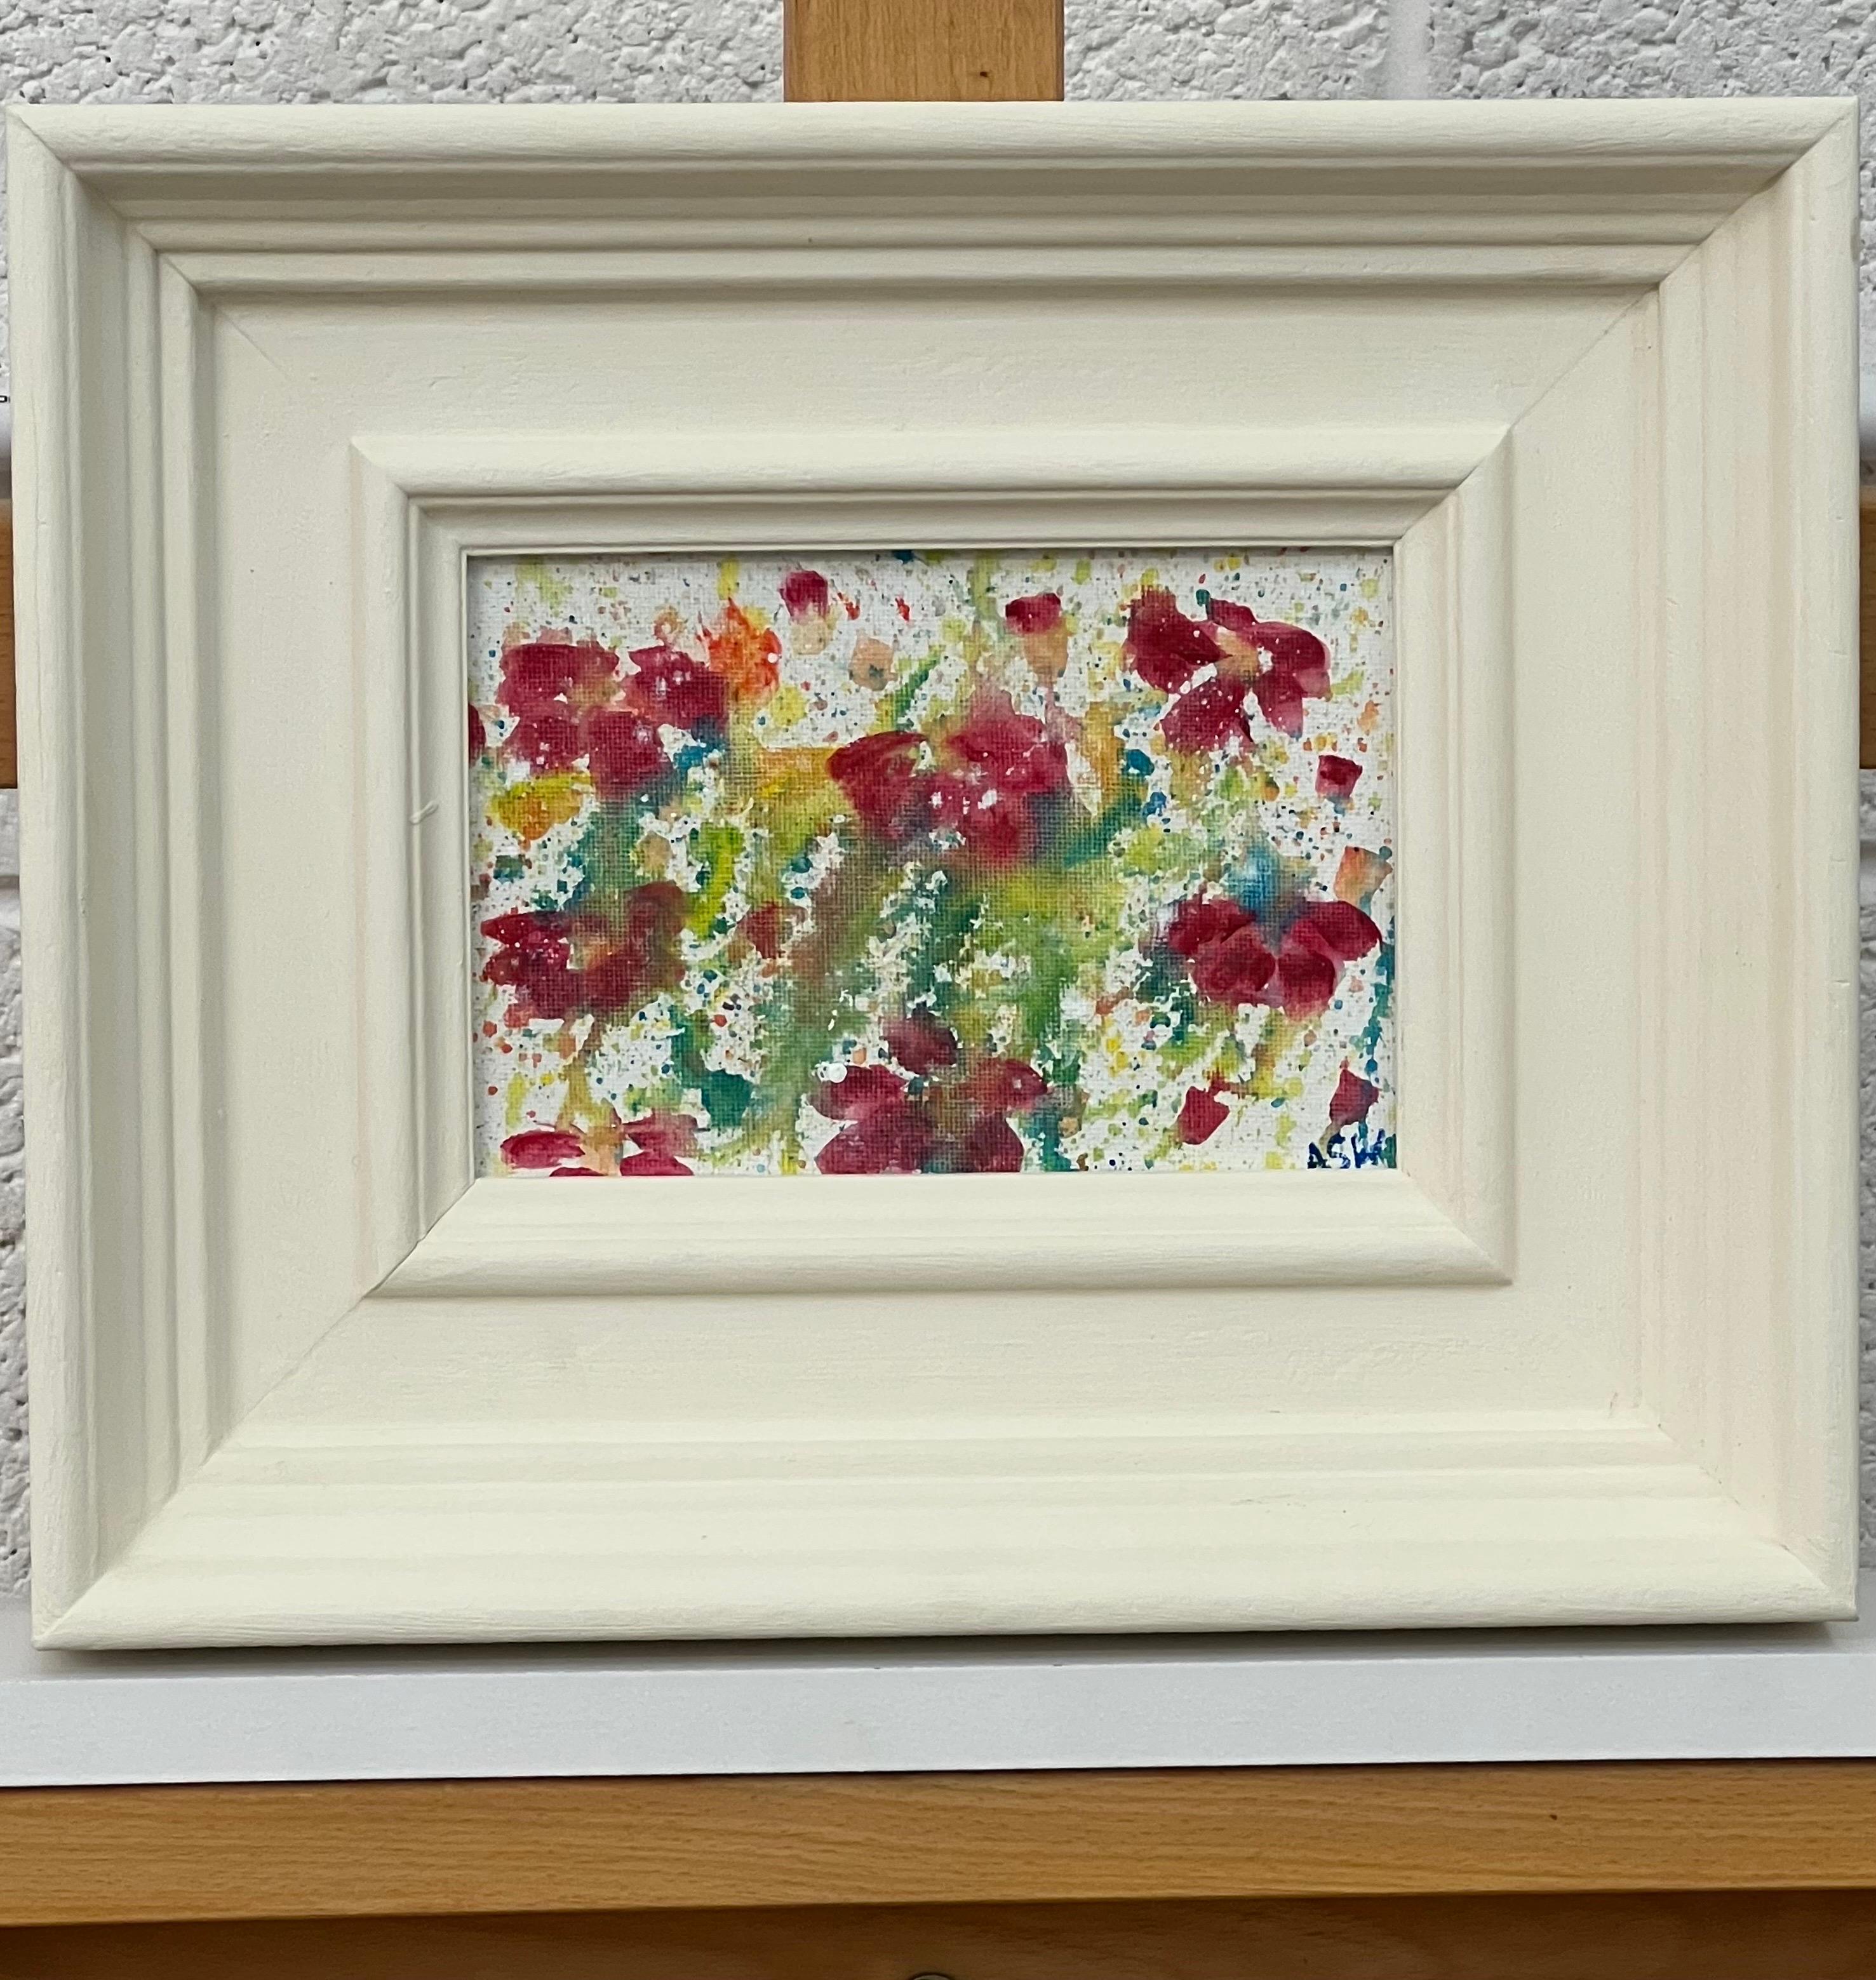 Étude de fleurs abstraites miniatures sur toile blanche d'un artiste britannique contemporain - Contemporain Painting par Angela Wakefield